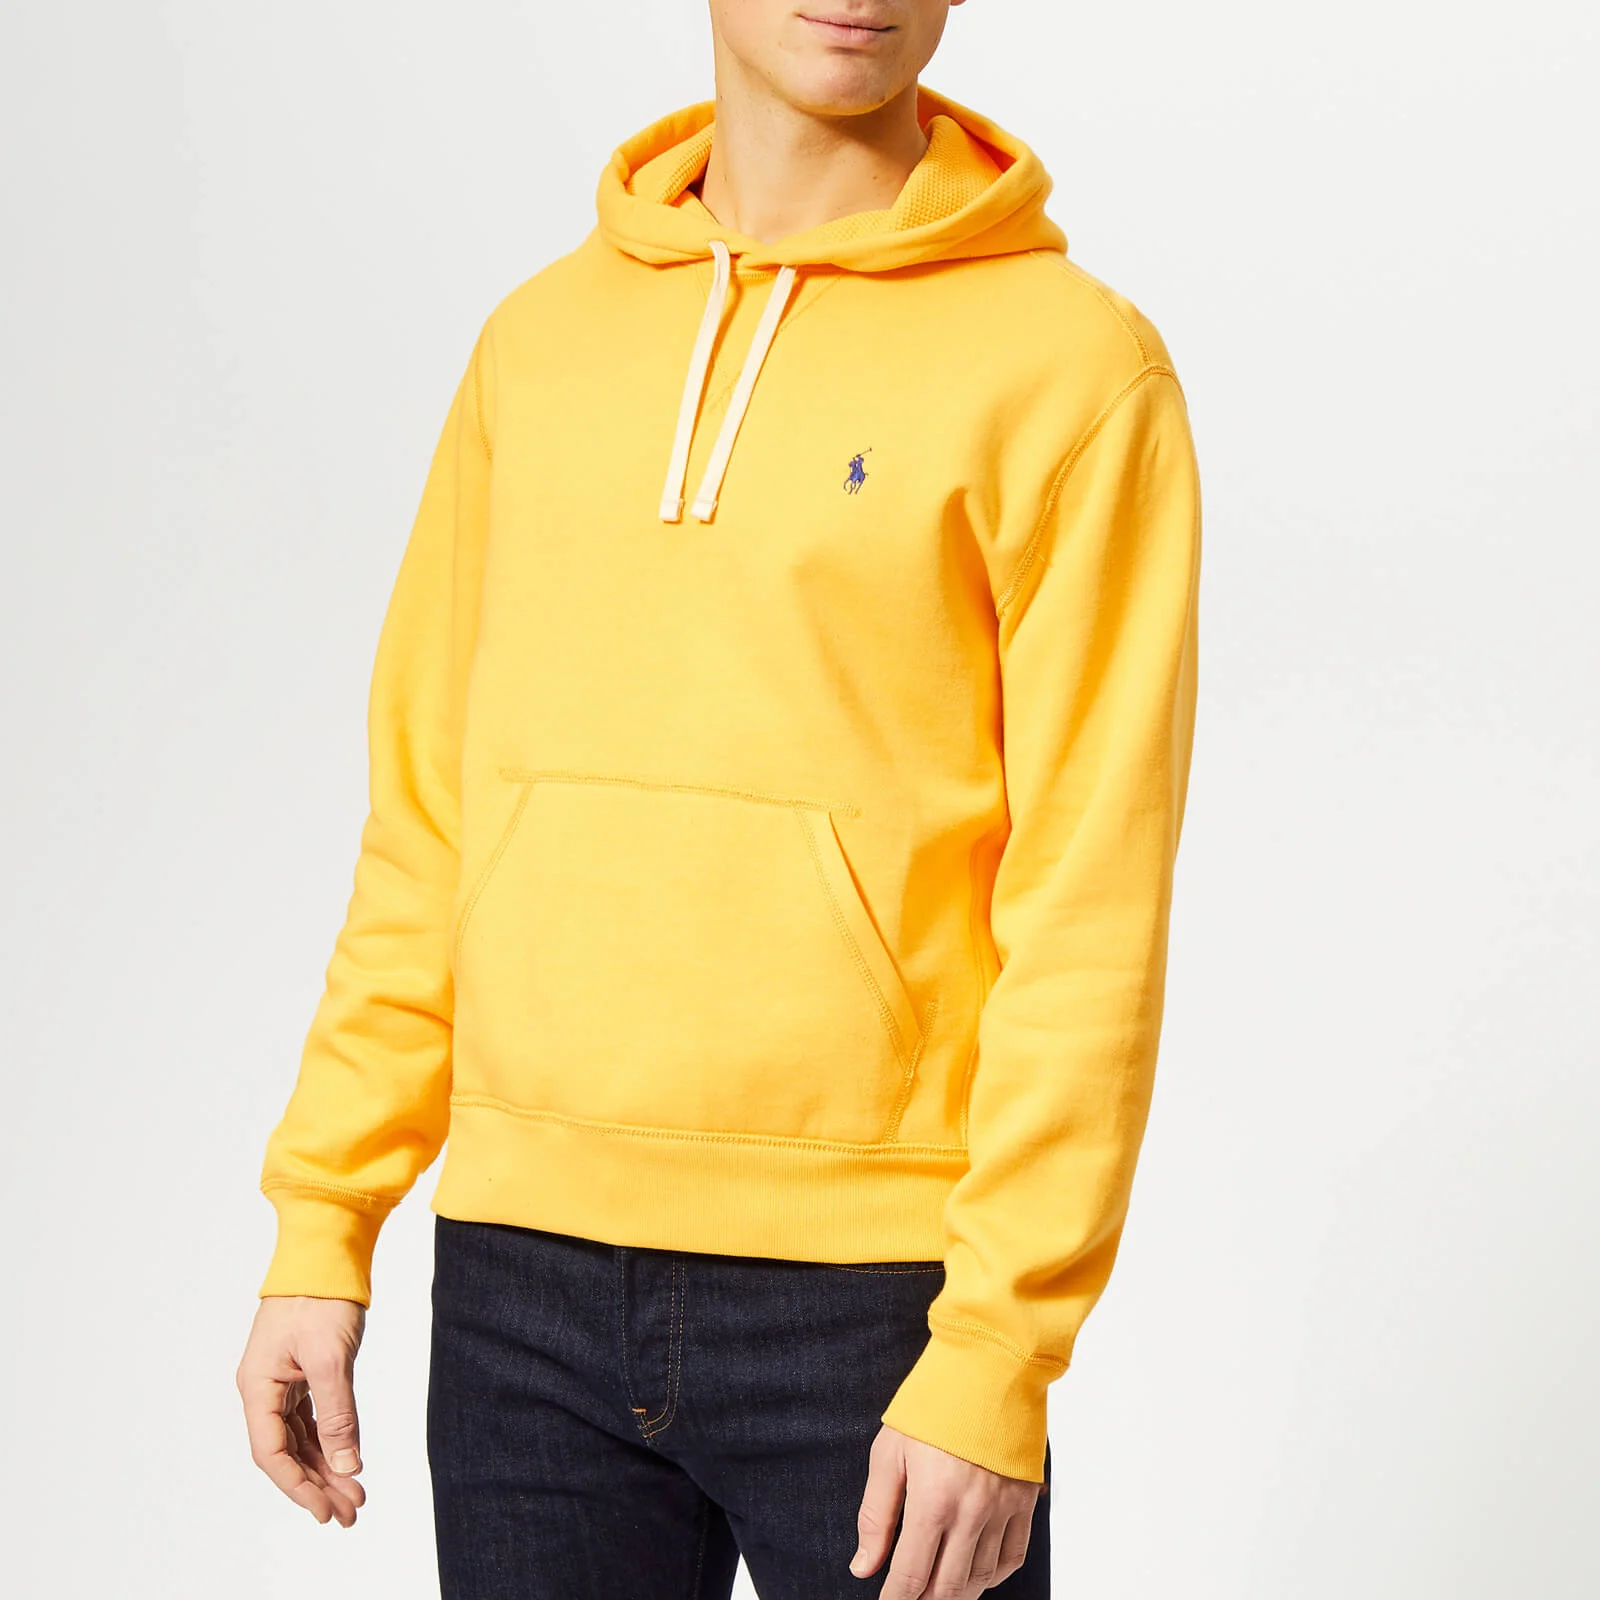 Polo Ralph Lauren Men's Pop Over Hoody - Chrome Yellow Image 1